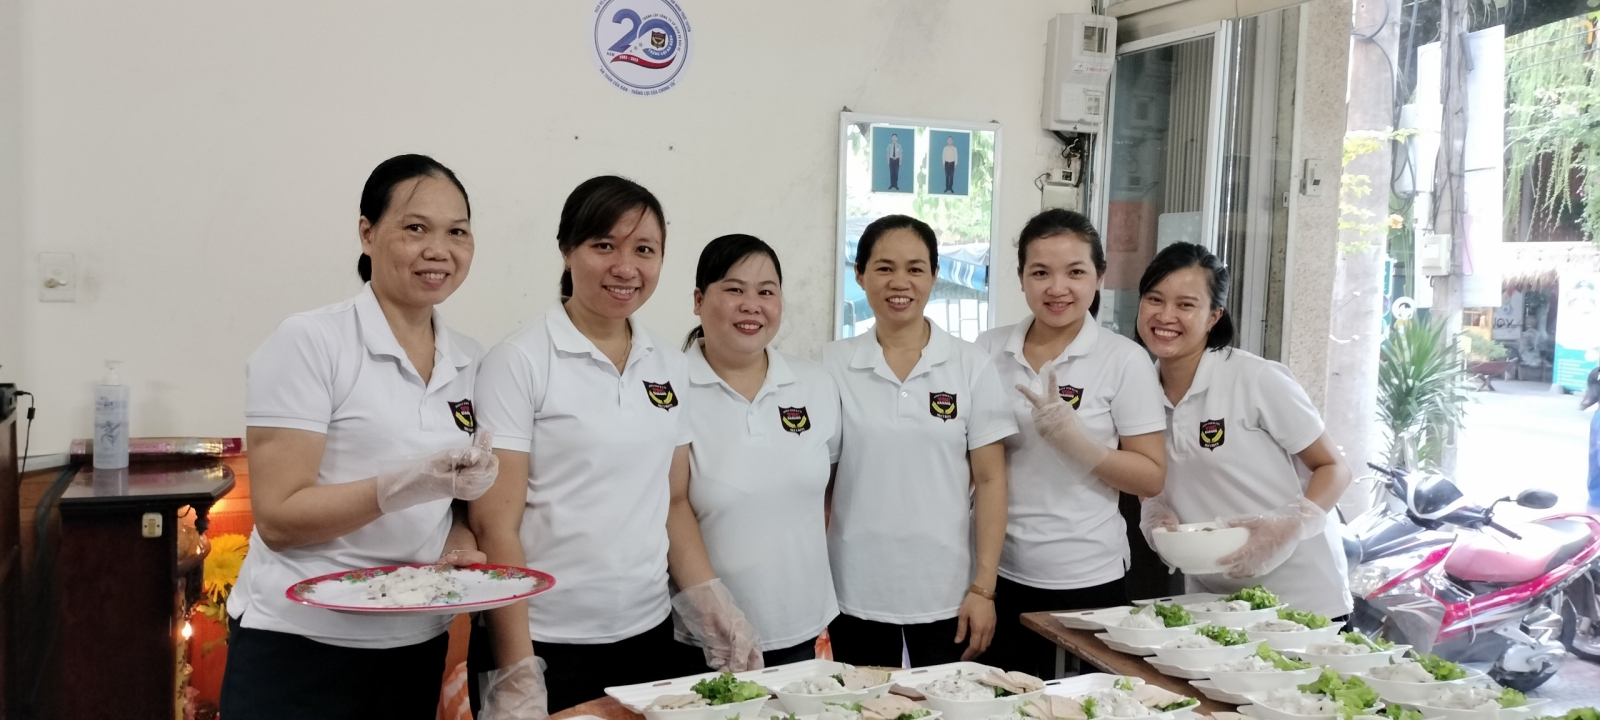 Chương trình từ thiện tại Bệnh viện phụ sản nhi Đà Nẵng